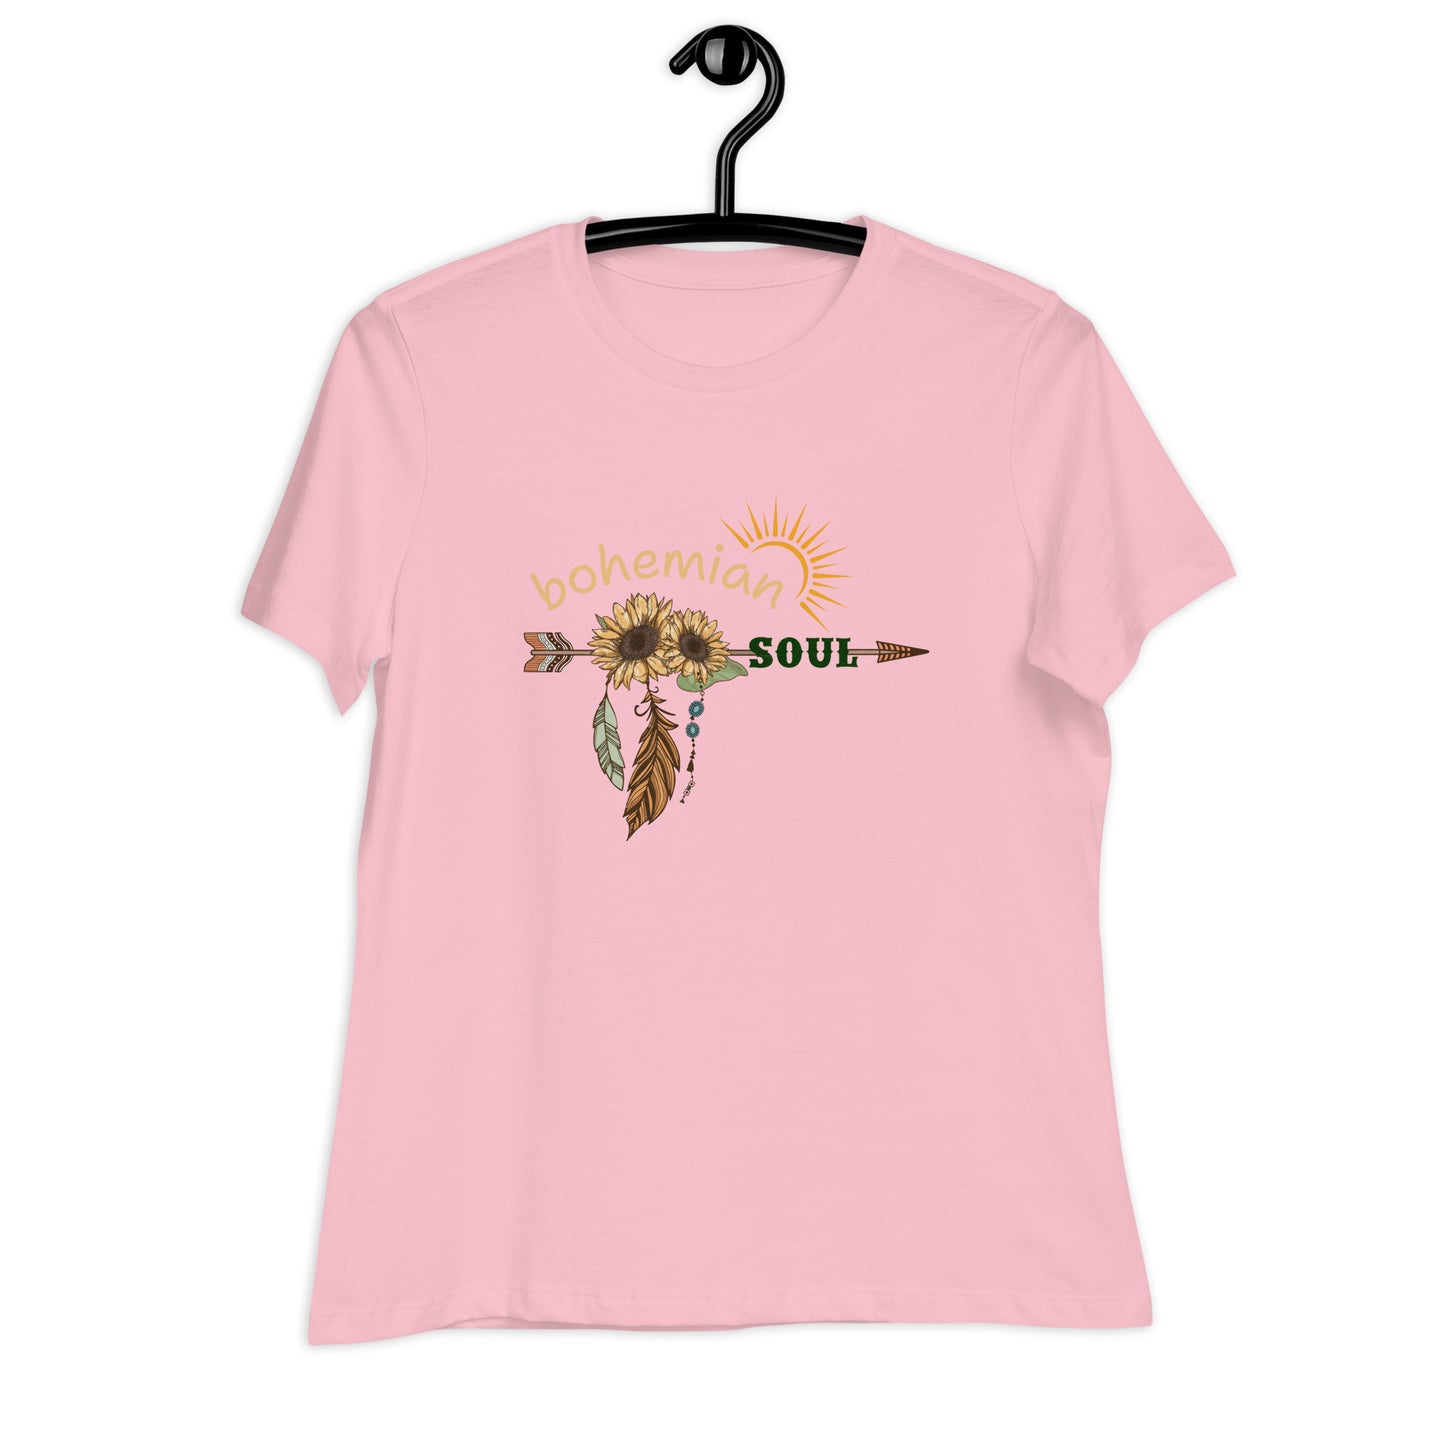 Bohemian Soul Women's Relaxed T-Shirt